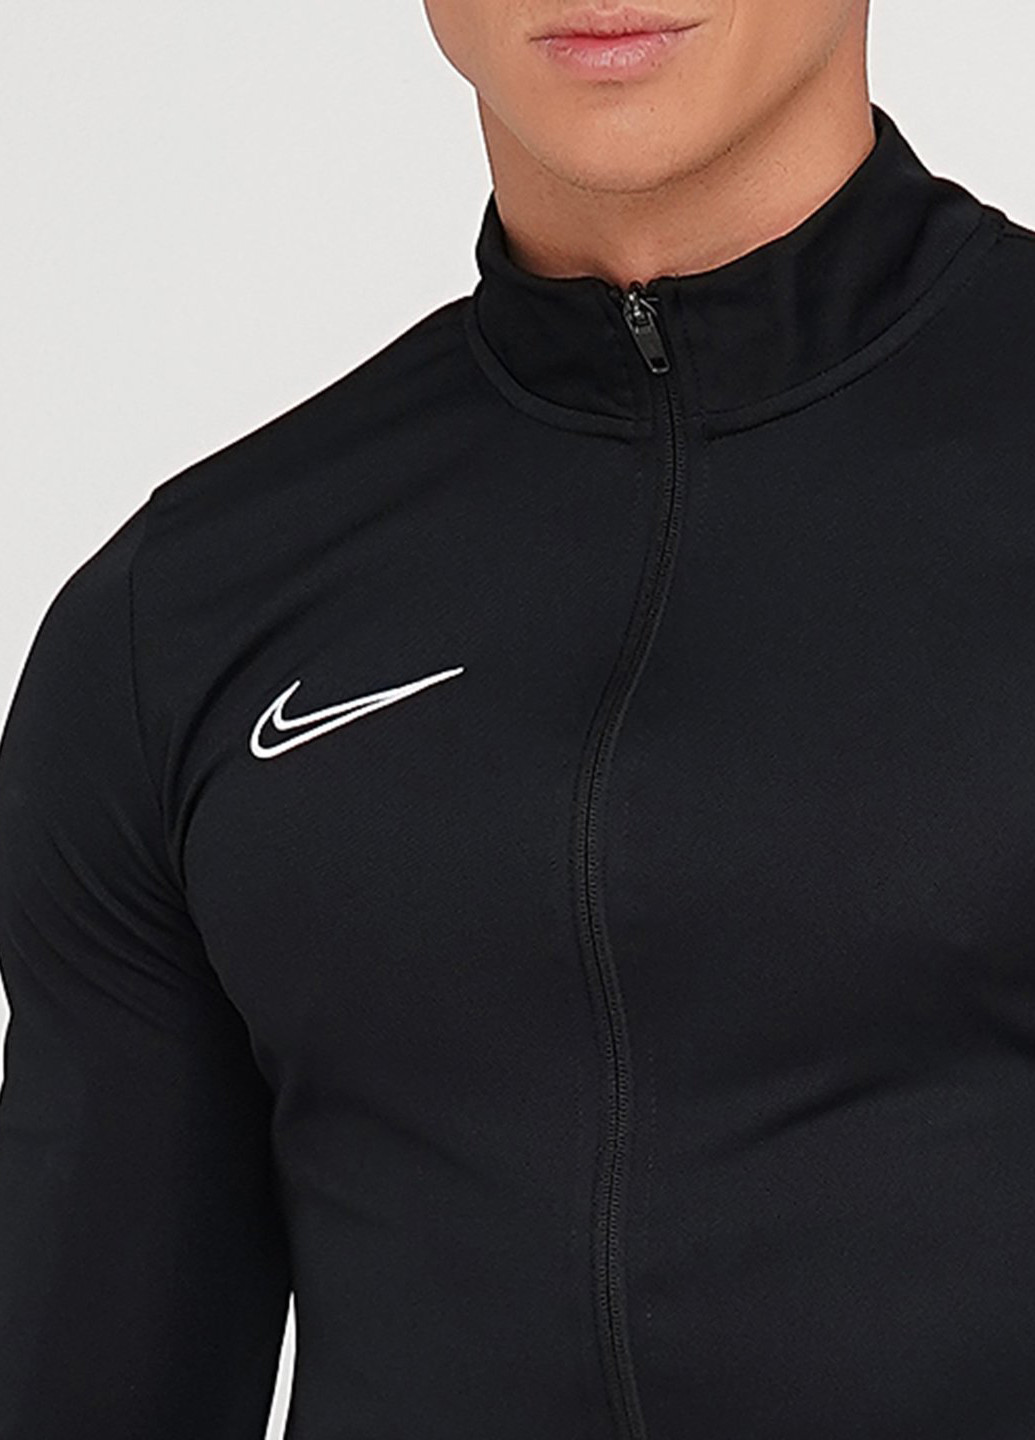 Черный демисезонный костюм (олимпийка, брюки) брючный Nike M Nk Df Acd21 Trk Suit K